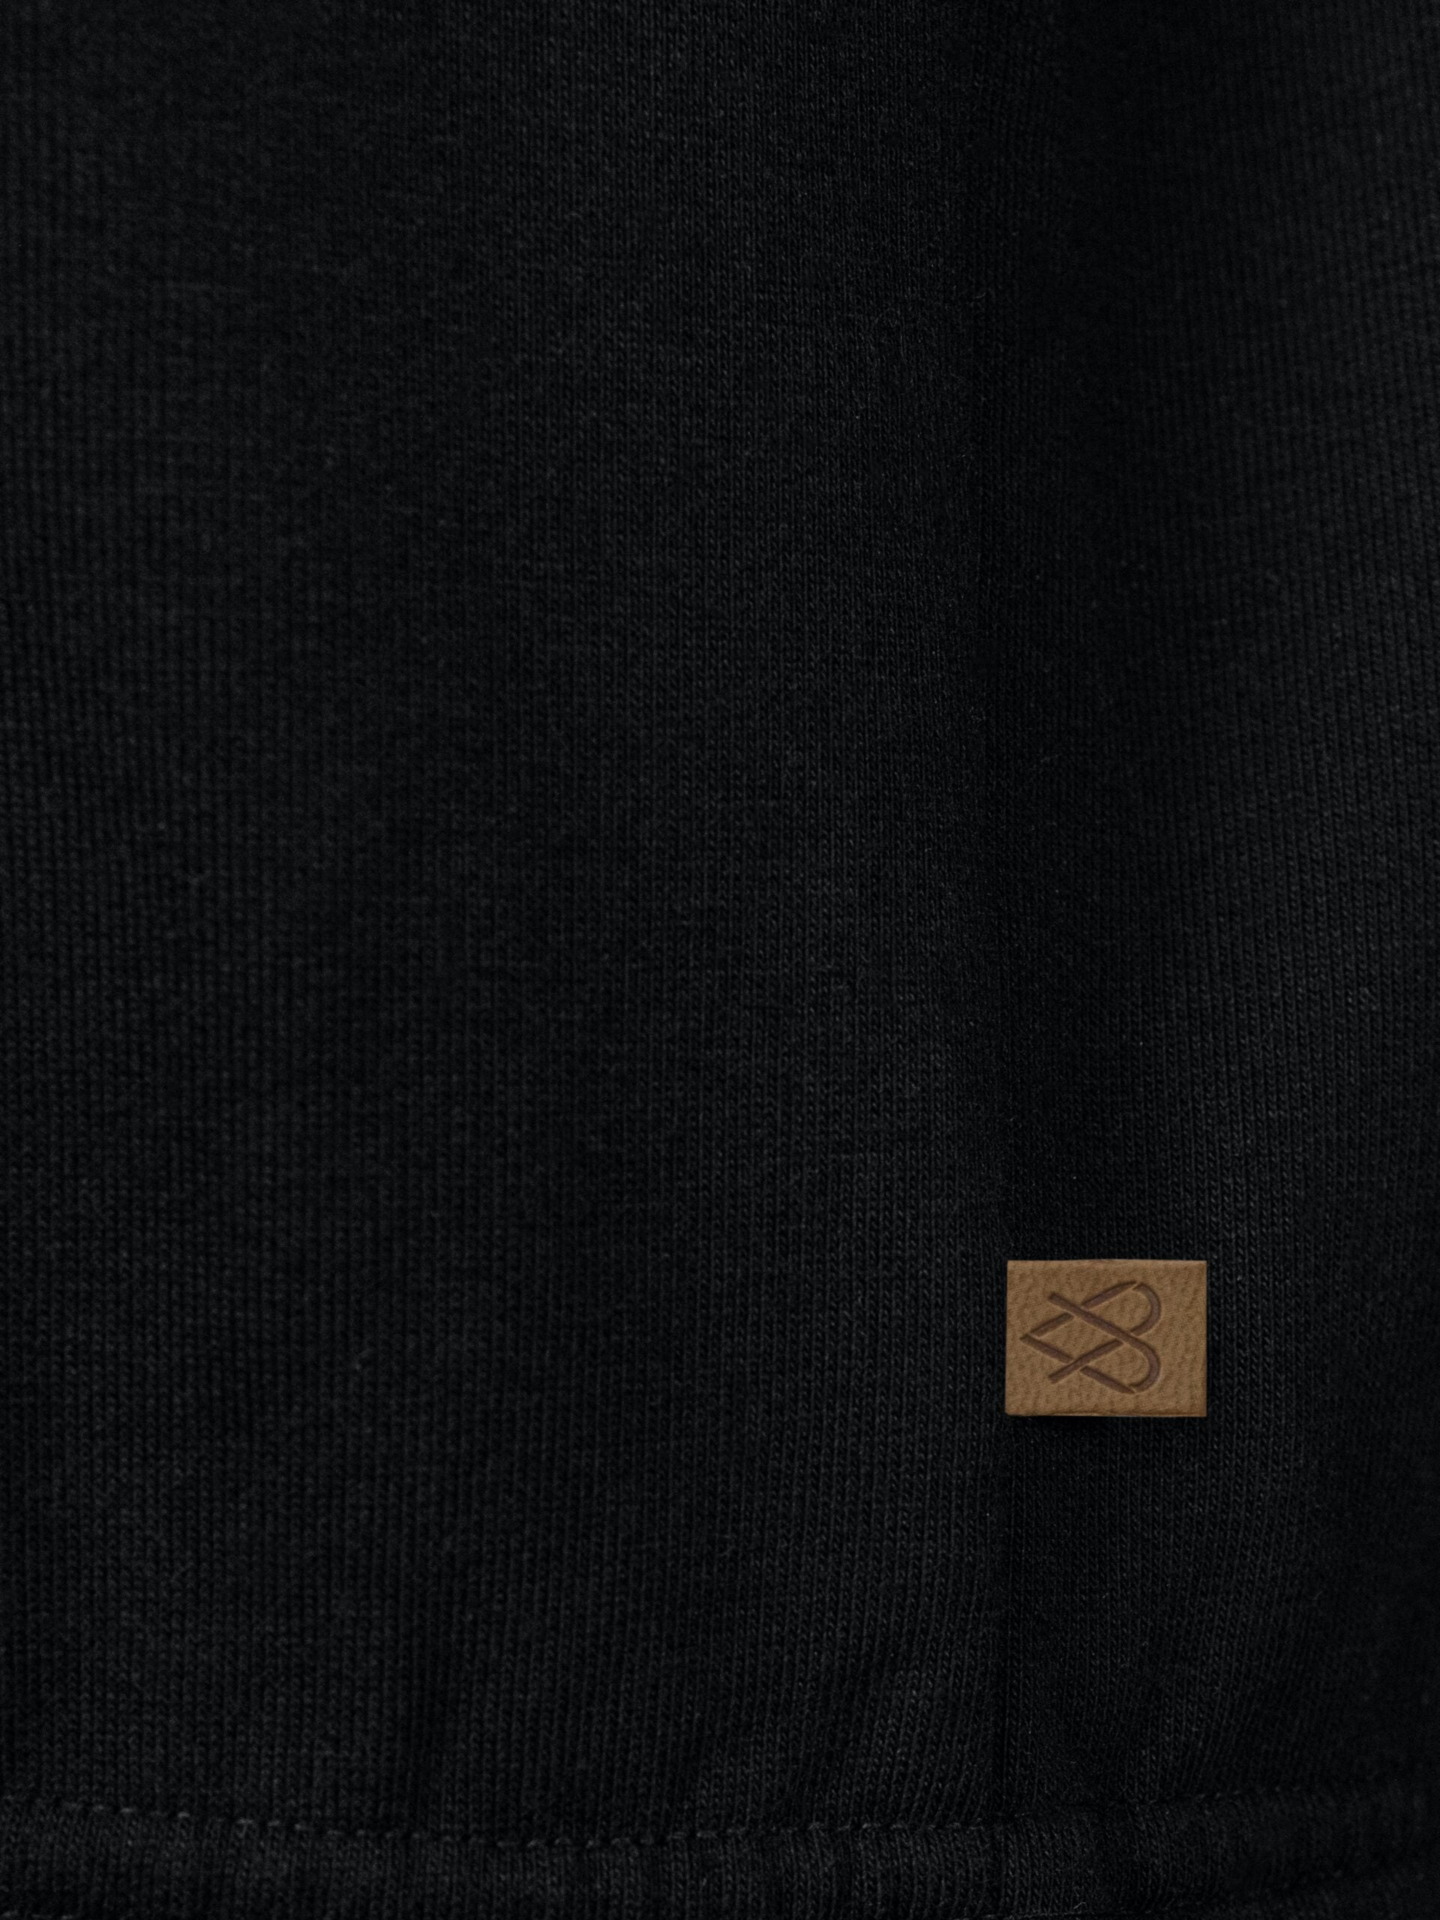 Bluza Crop Top Subtle Cotton Black 339 Zł Detal